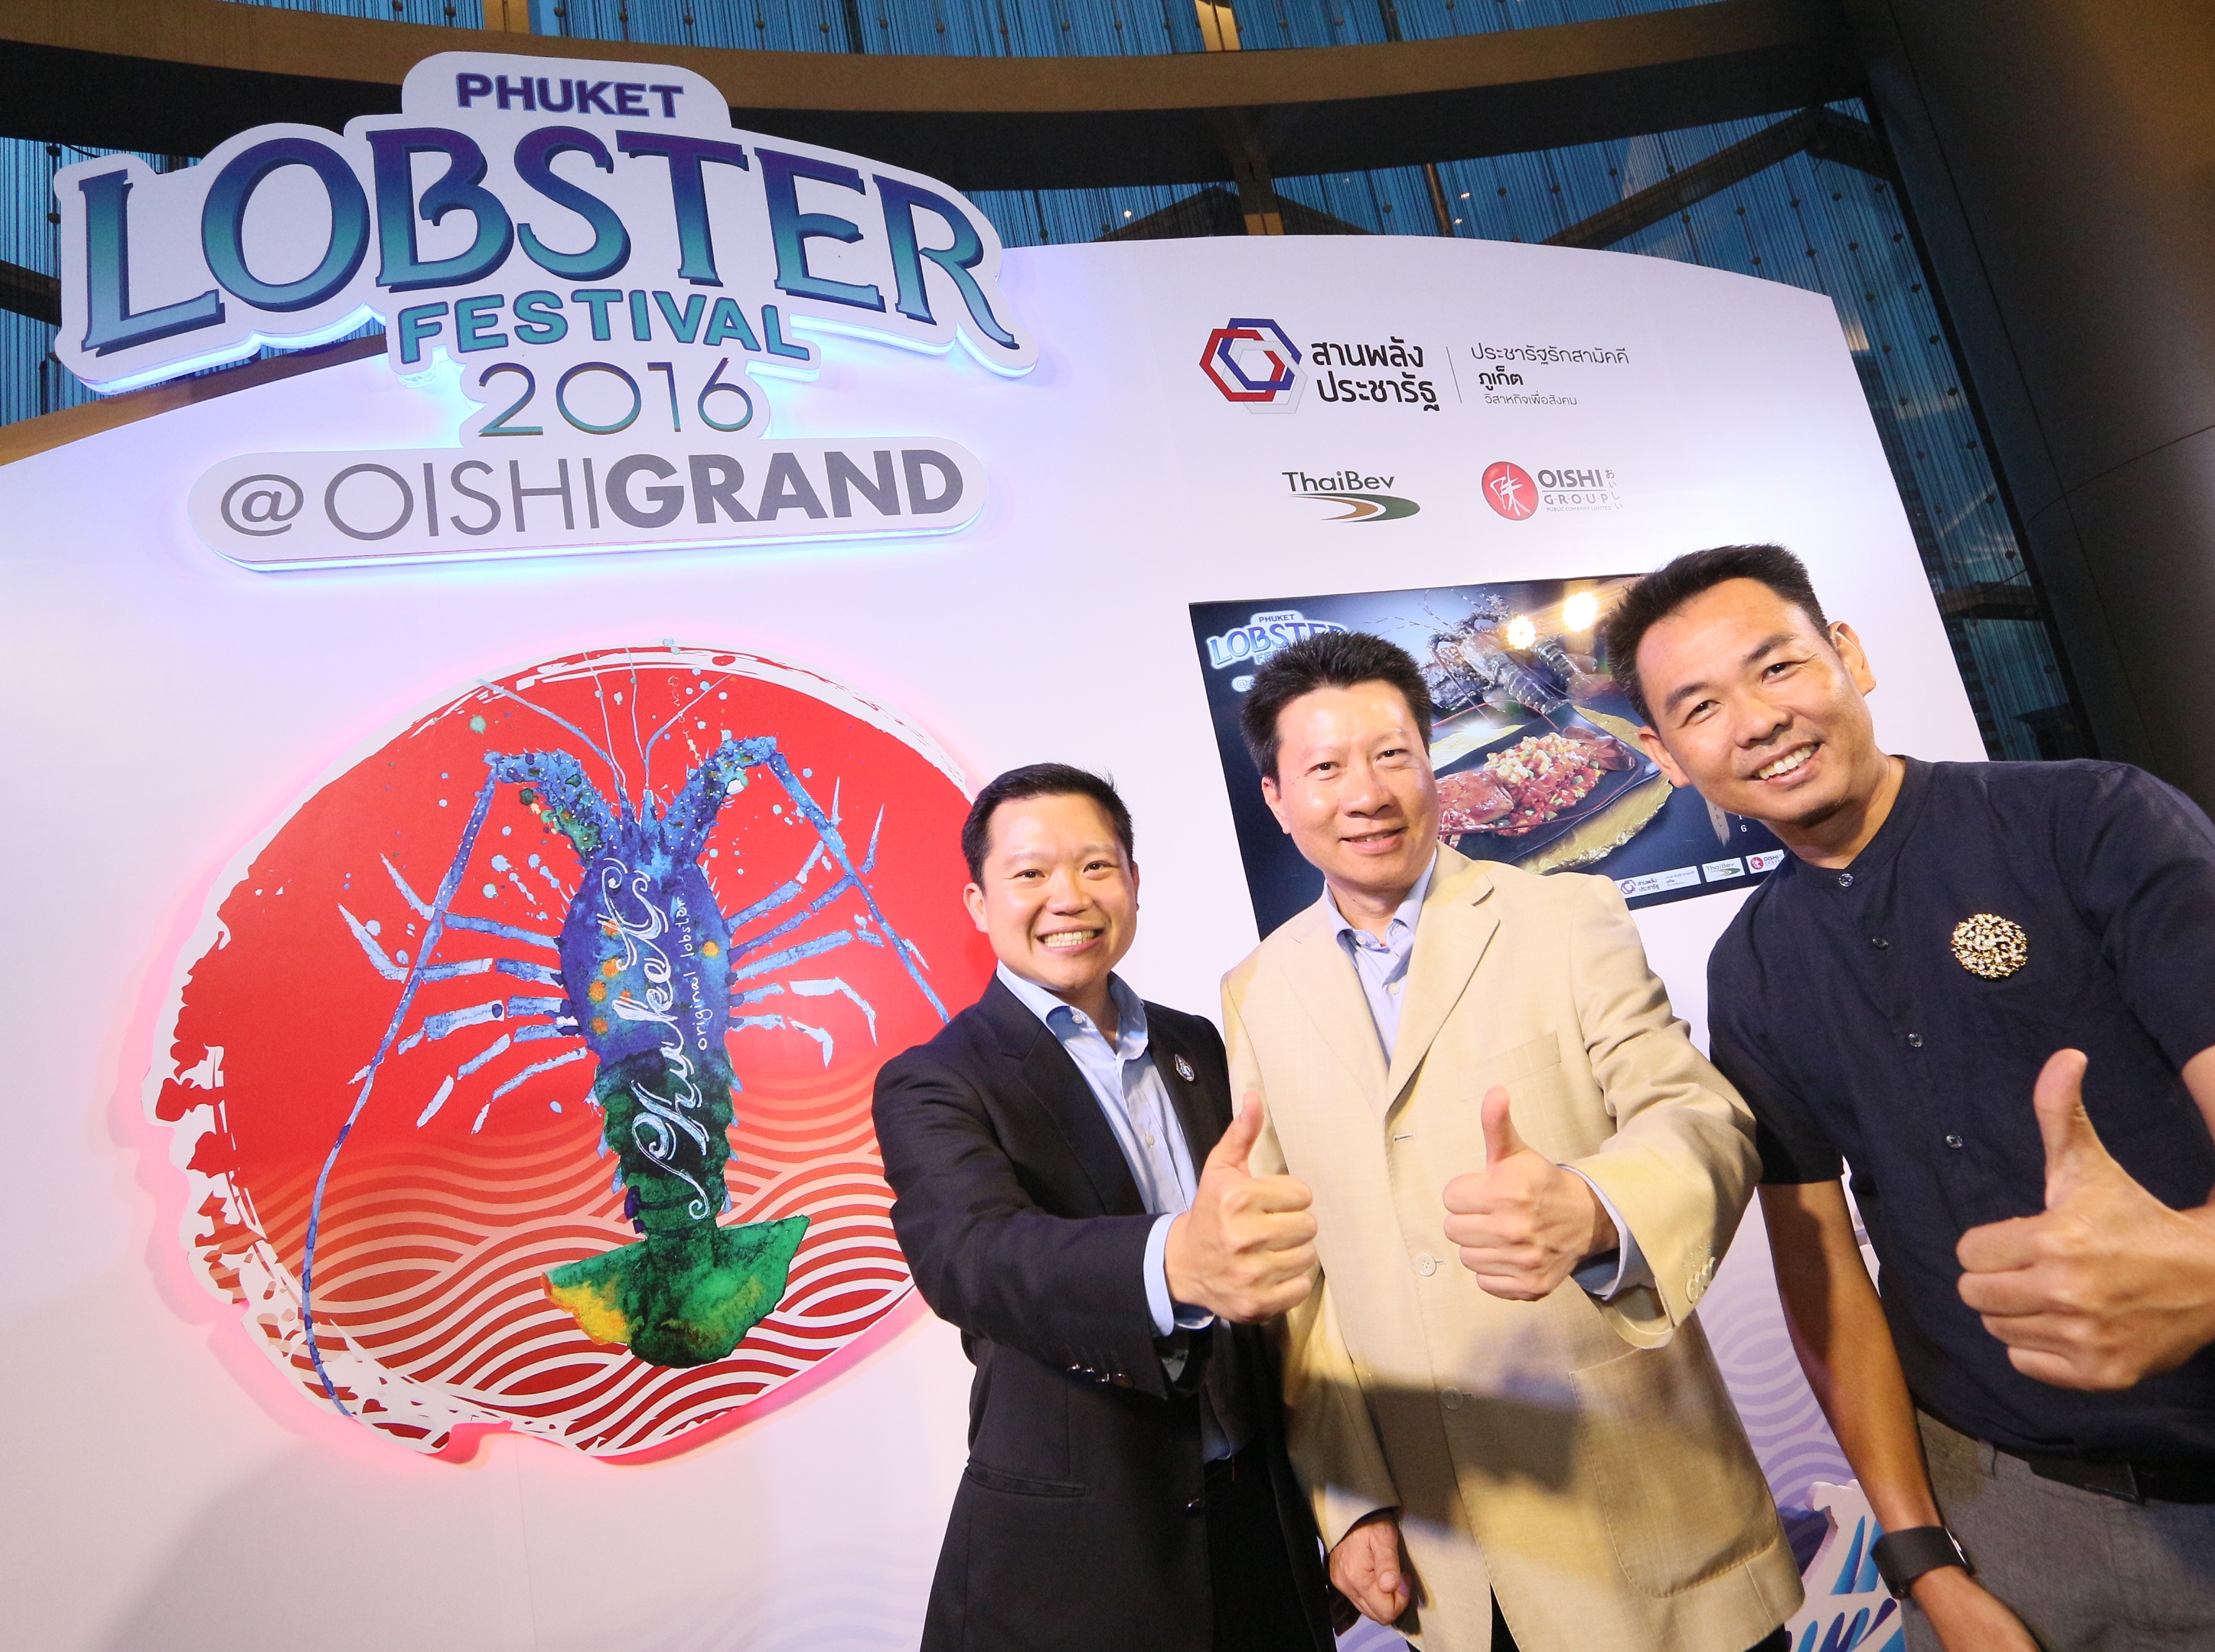 “โออิชิ” ขานรับนโยบาย “ประชารัฐรักสามัคคีฯ”  หนุนชุมชนผู้เลี้ยงกุ้งมังกรภูเก็ต  จัดเทศกาล “Phuket Lobster Festival 2016 @OISHI GRAND”